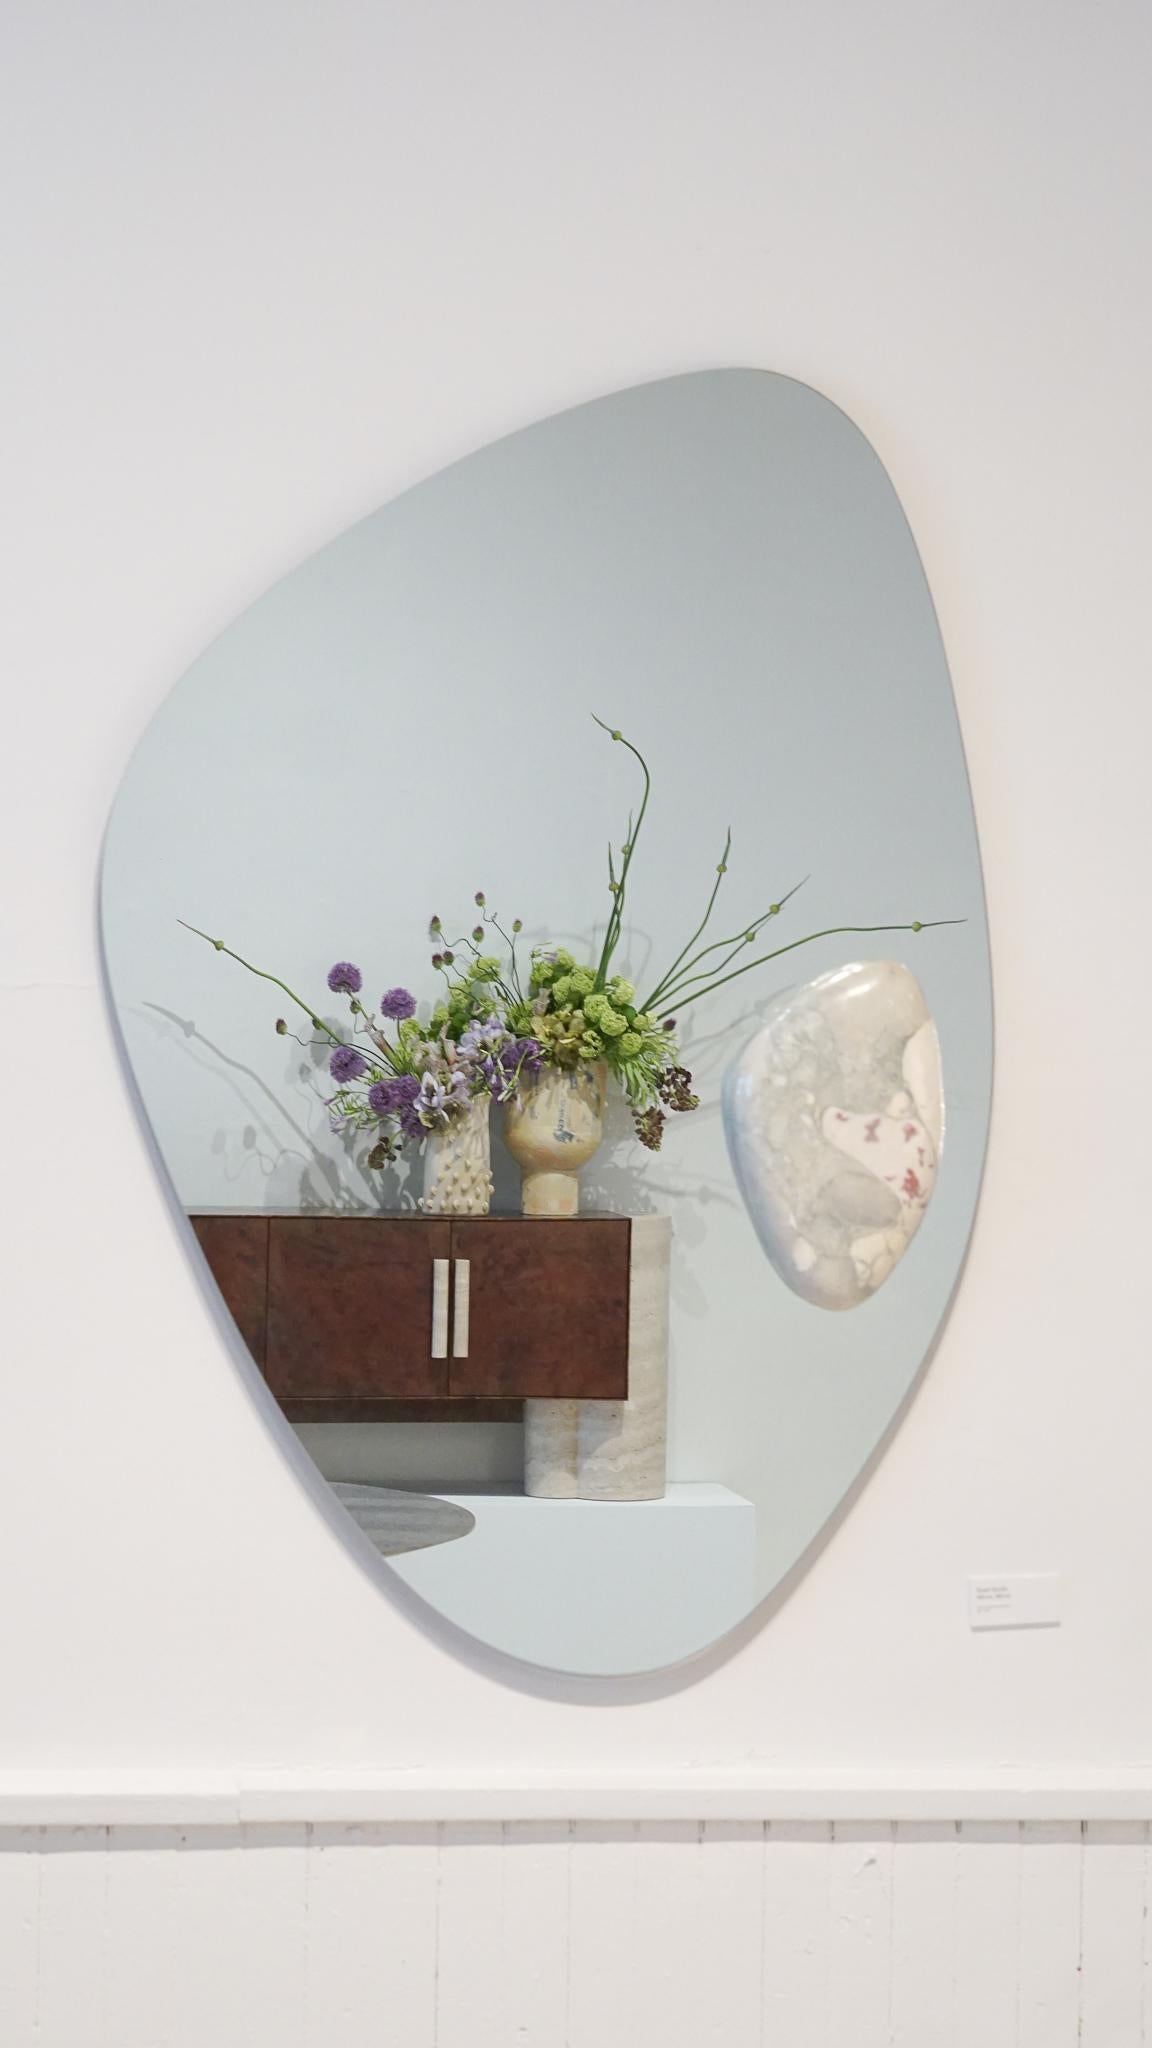 Miroir Bryces par Swell Studio.
Dimensions : D3 x L40 x H60 cm.
MATERIAL : miroir transparent, Breccia Stazzema.


Le miroir Bryces est une exploration des formes organiques et de la manière dont deux matériaux peuvent interagir. Une monture en